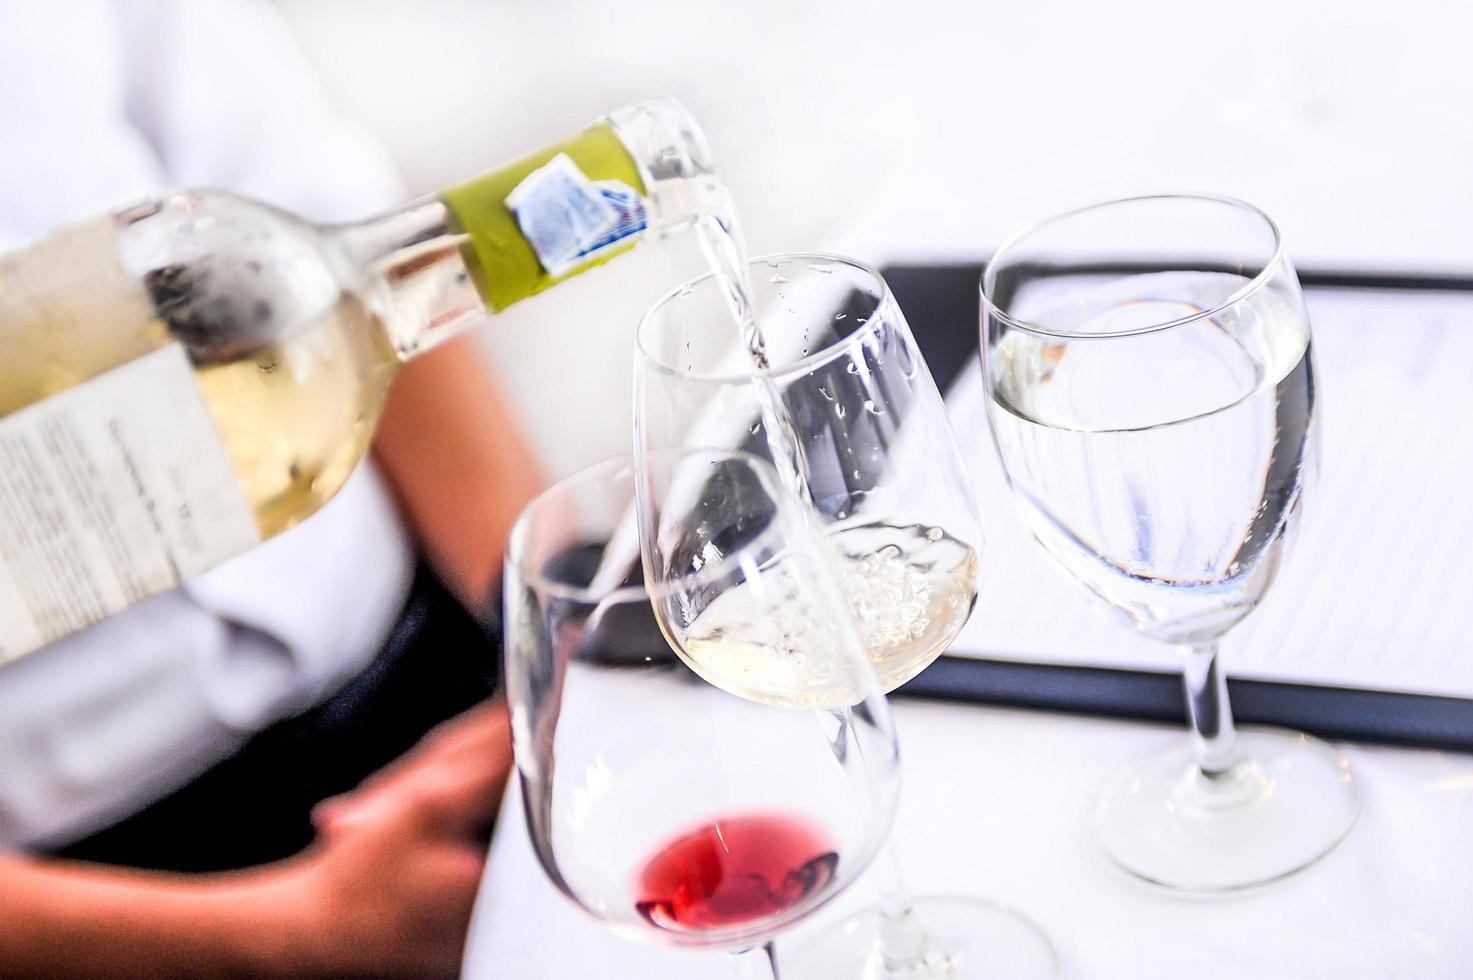 witte wijn proeven, in een glas gieten, wijn uit een wijnfles gieten foto